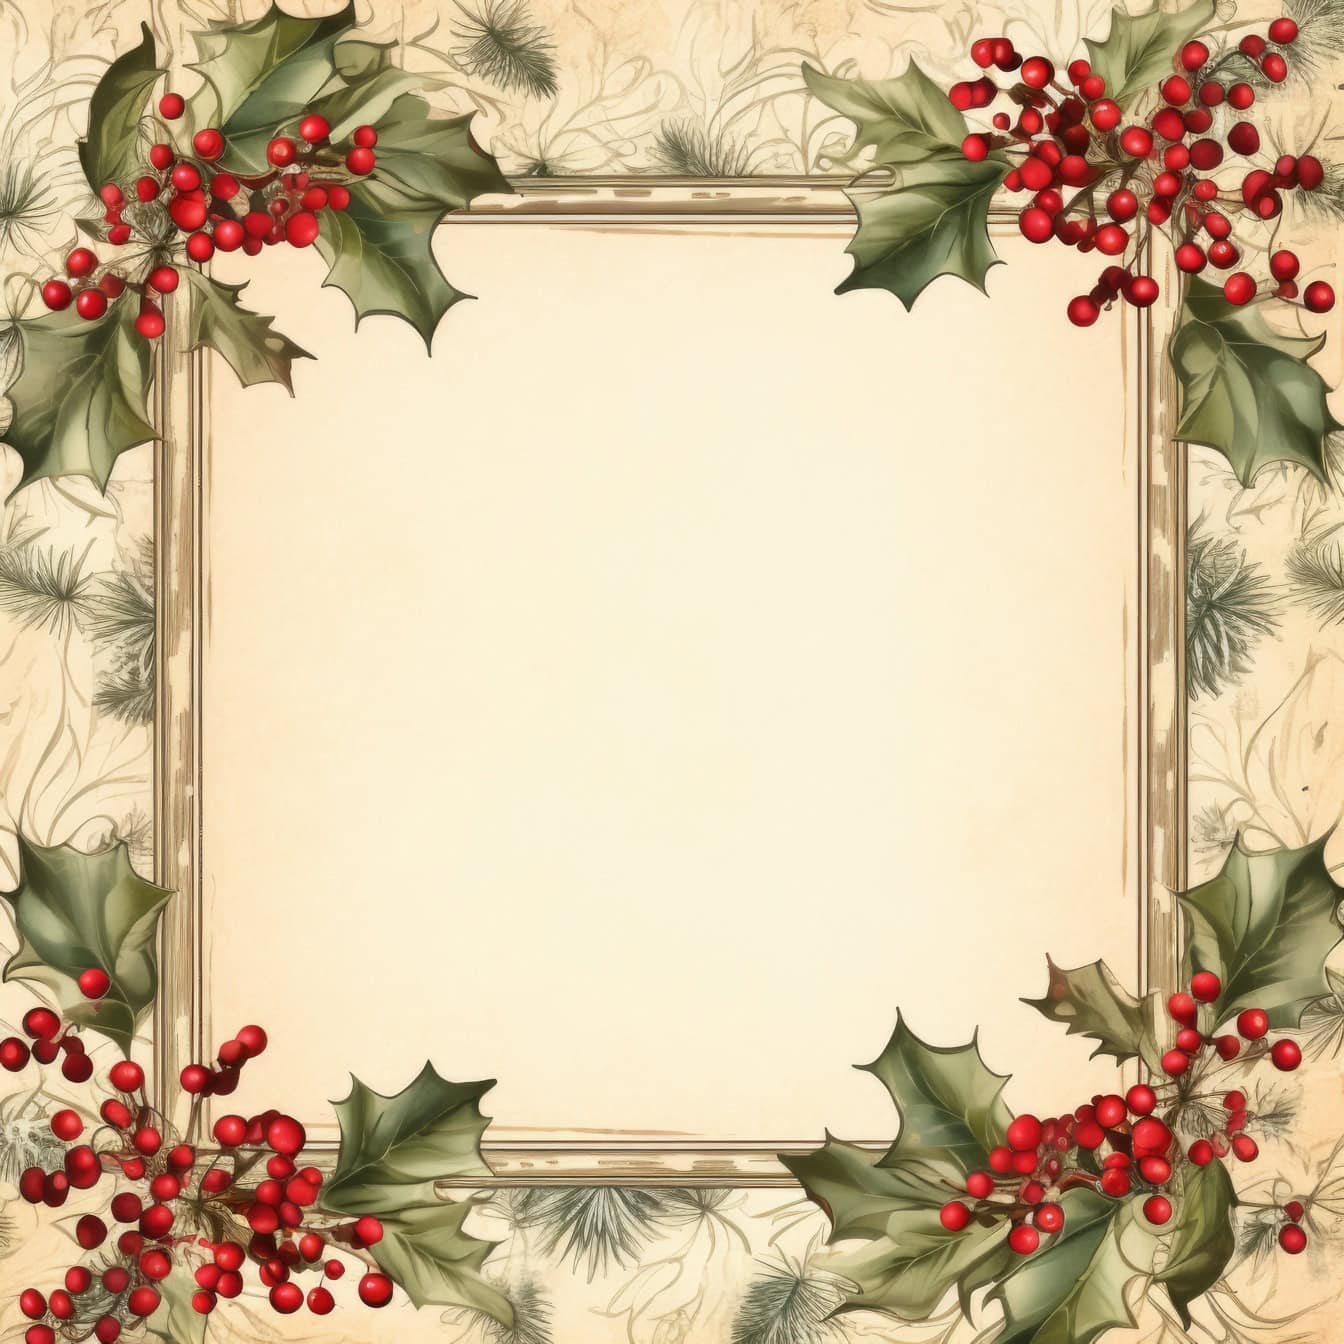 Modello di biglietto d’auguri di Natale in vecchio stile con cornice quadrata con bacche e foglie rosse